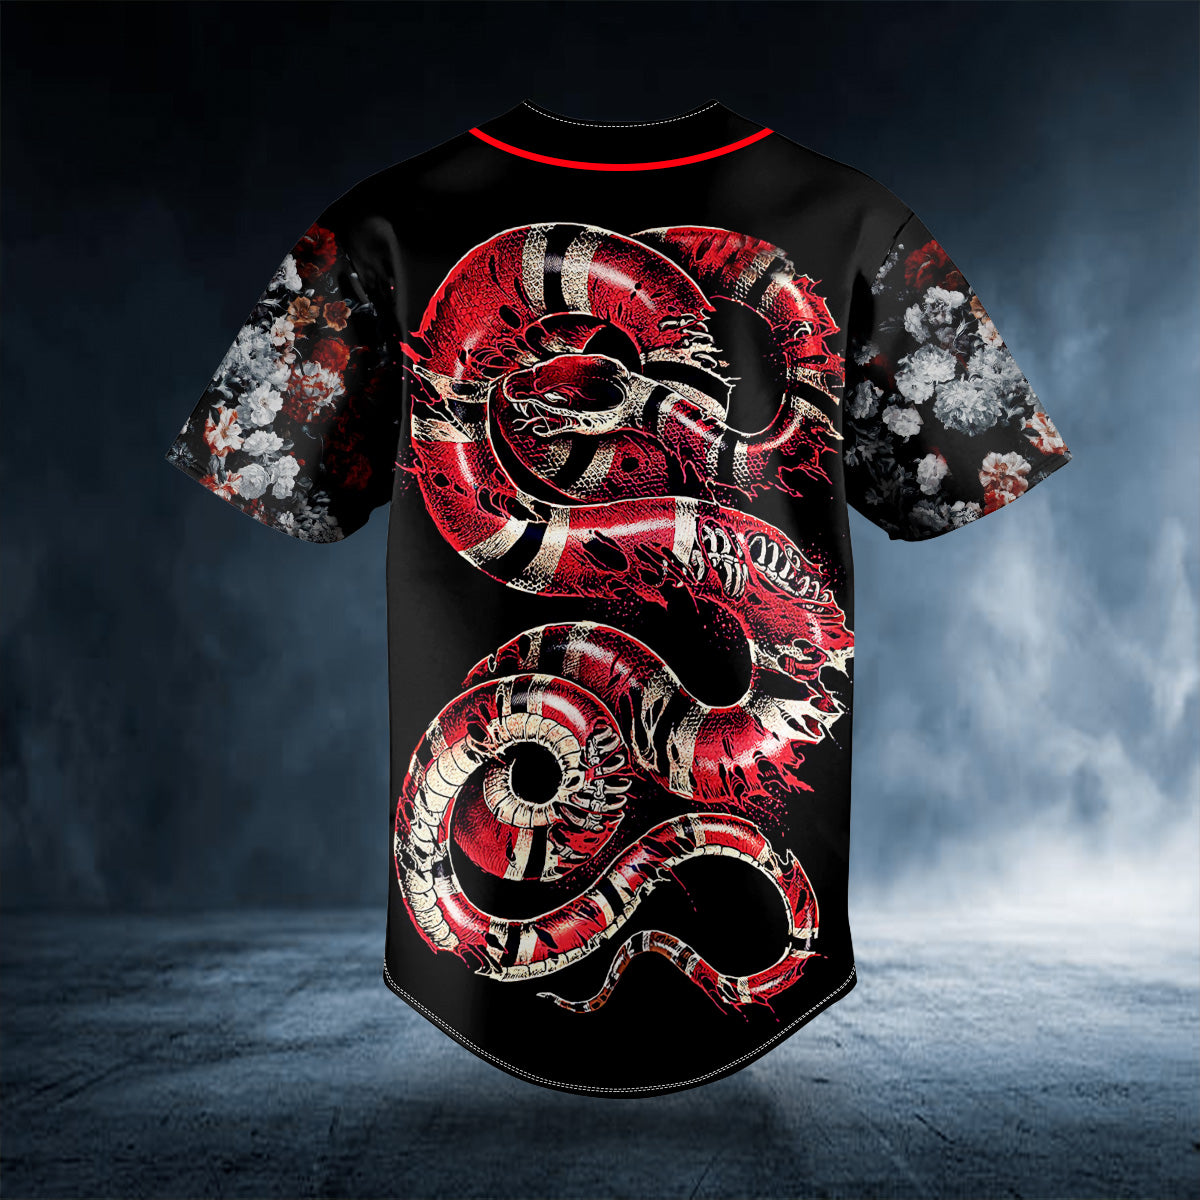 glam red of snake skull custom baseball jersey bsj 739 lyswb